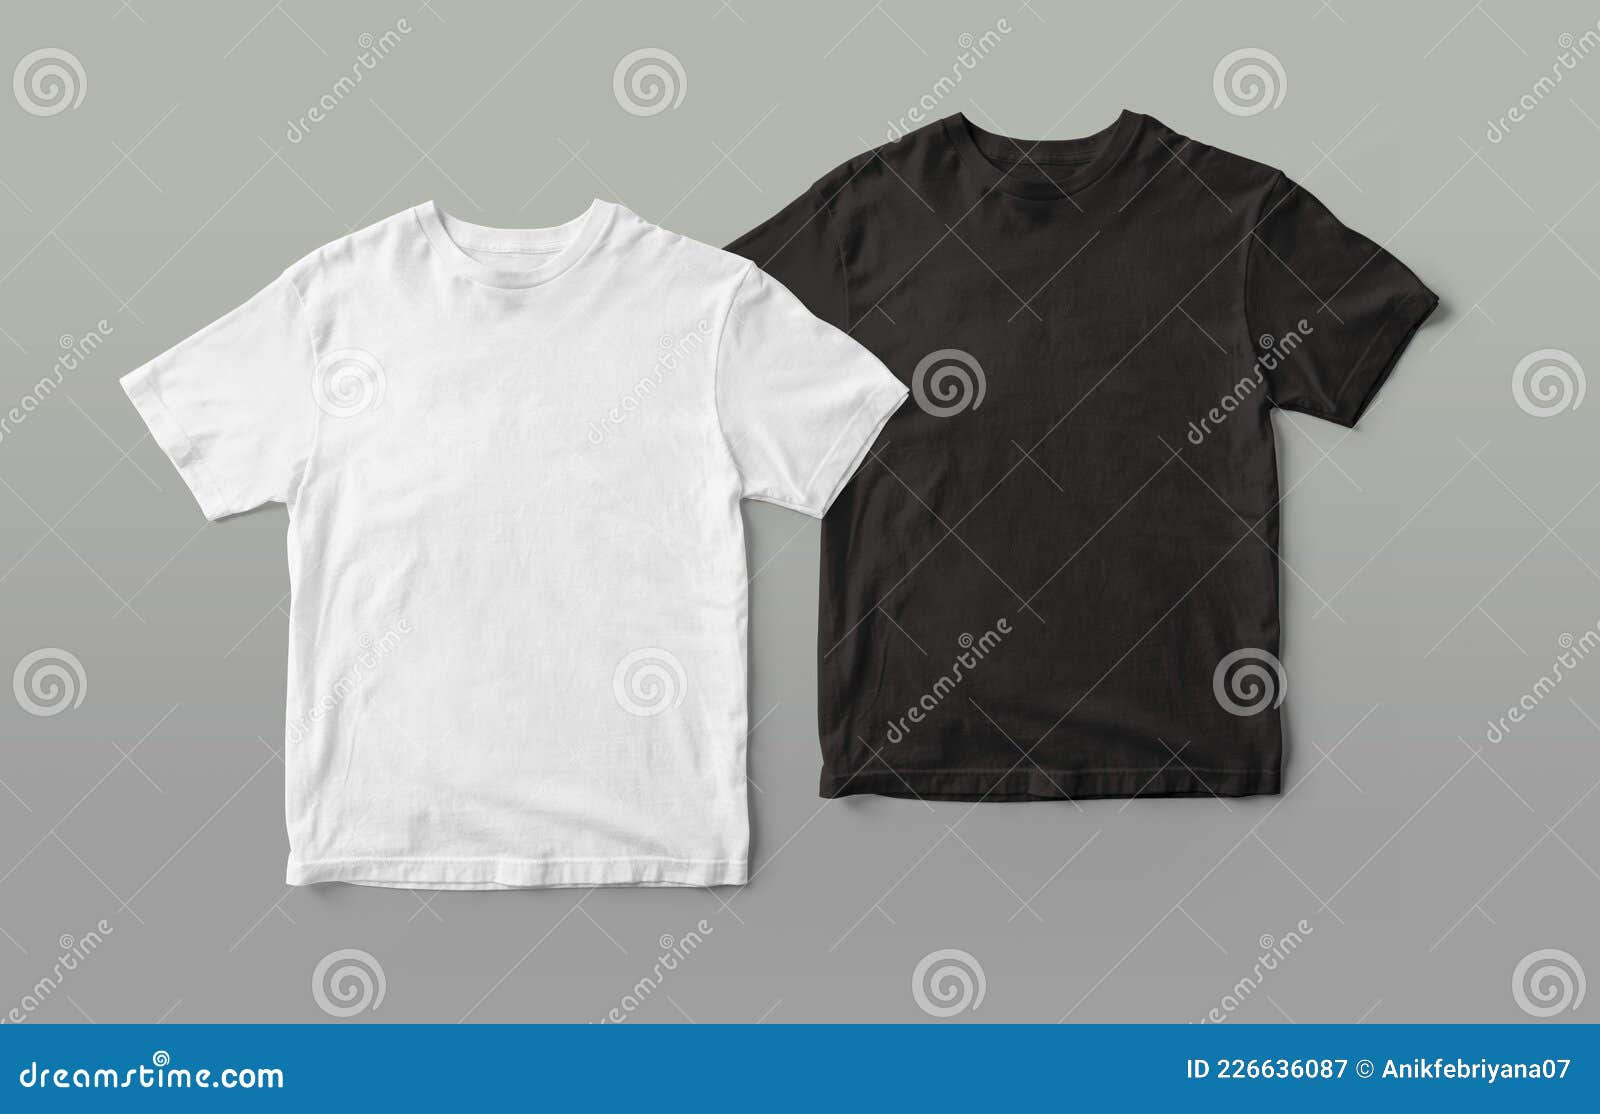 black and white  tshirt mockup 